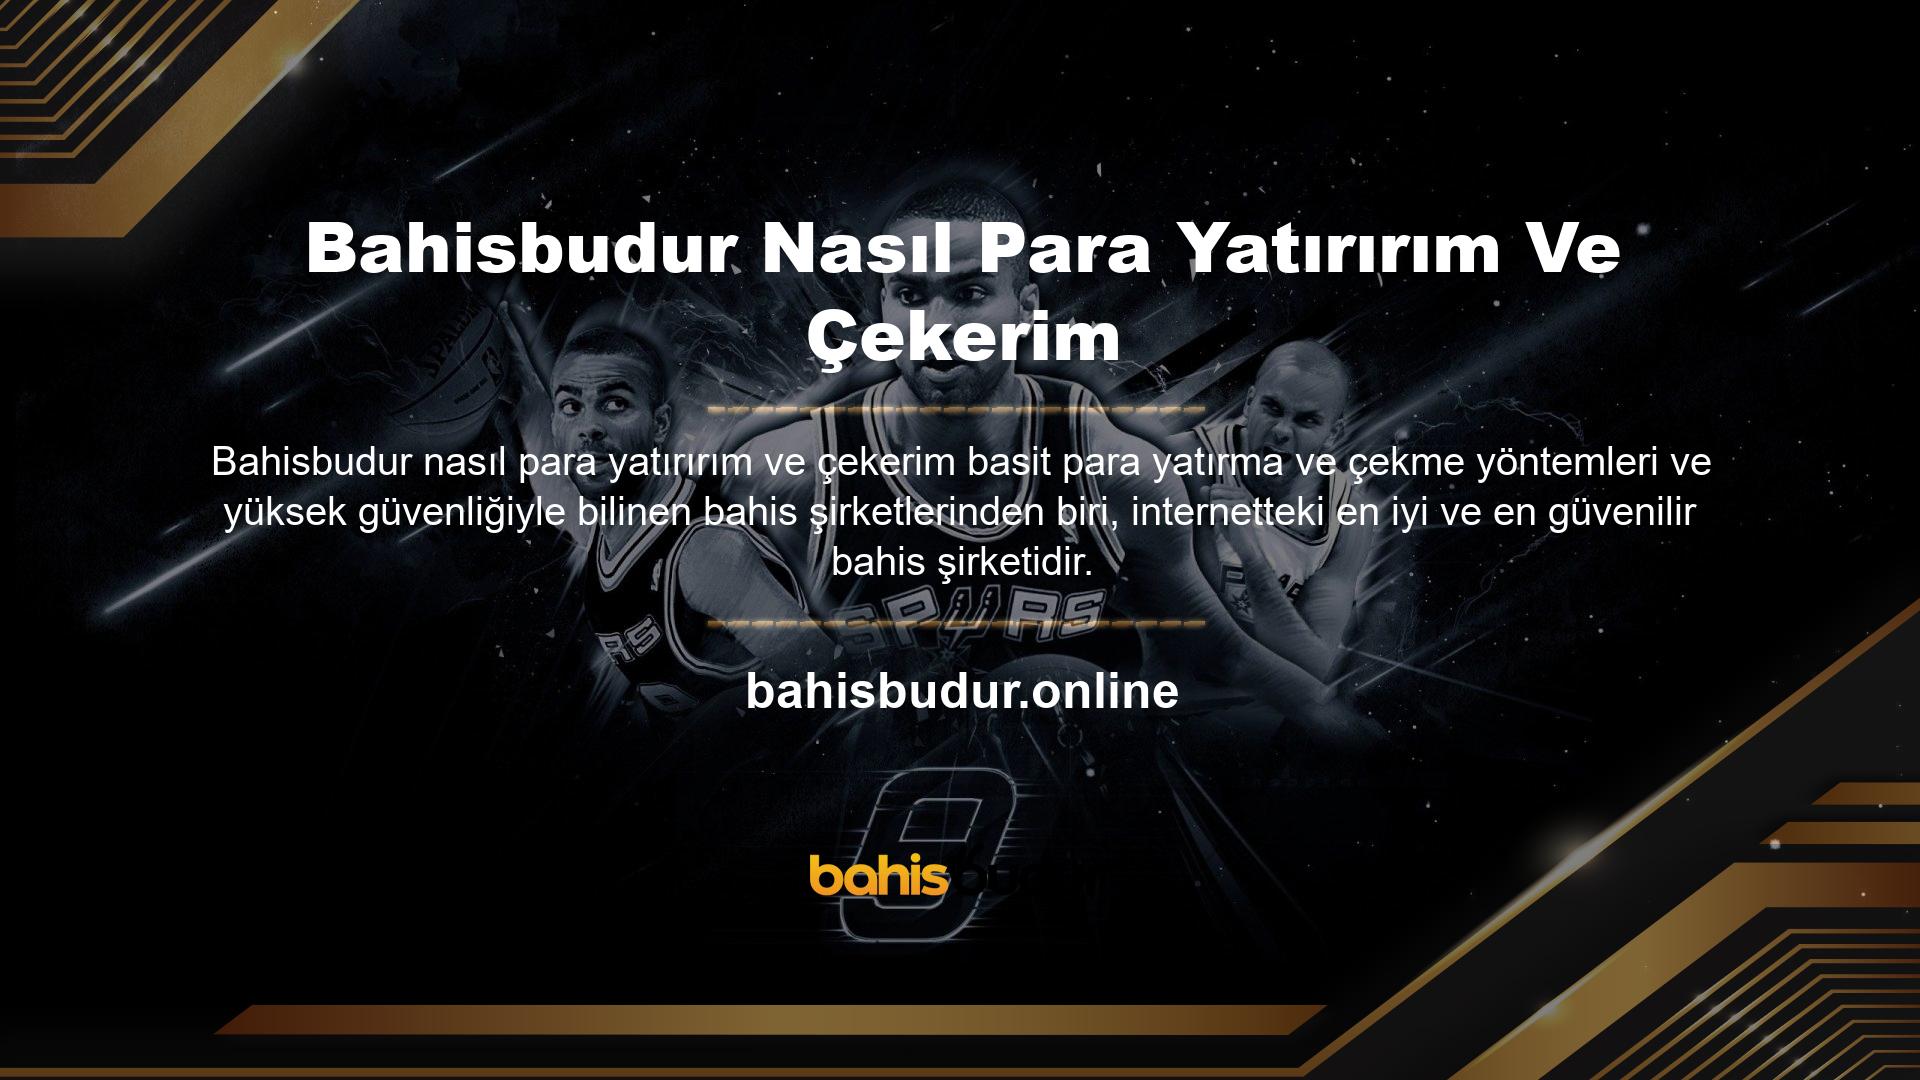 Bahisbudur, oyun sektörüne girdikten sonra tüm büyük platformlarda en popüler oyun sitesi haline geldi